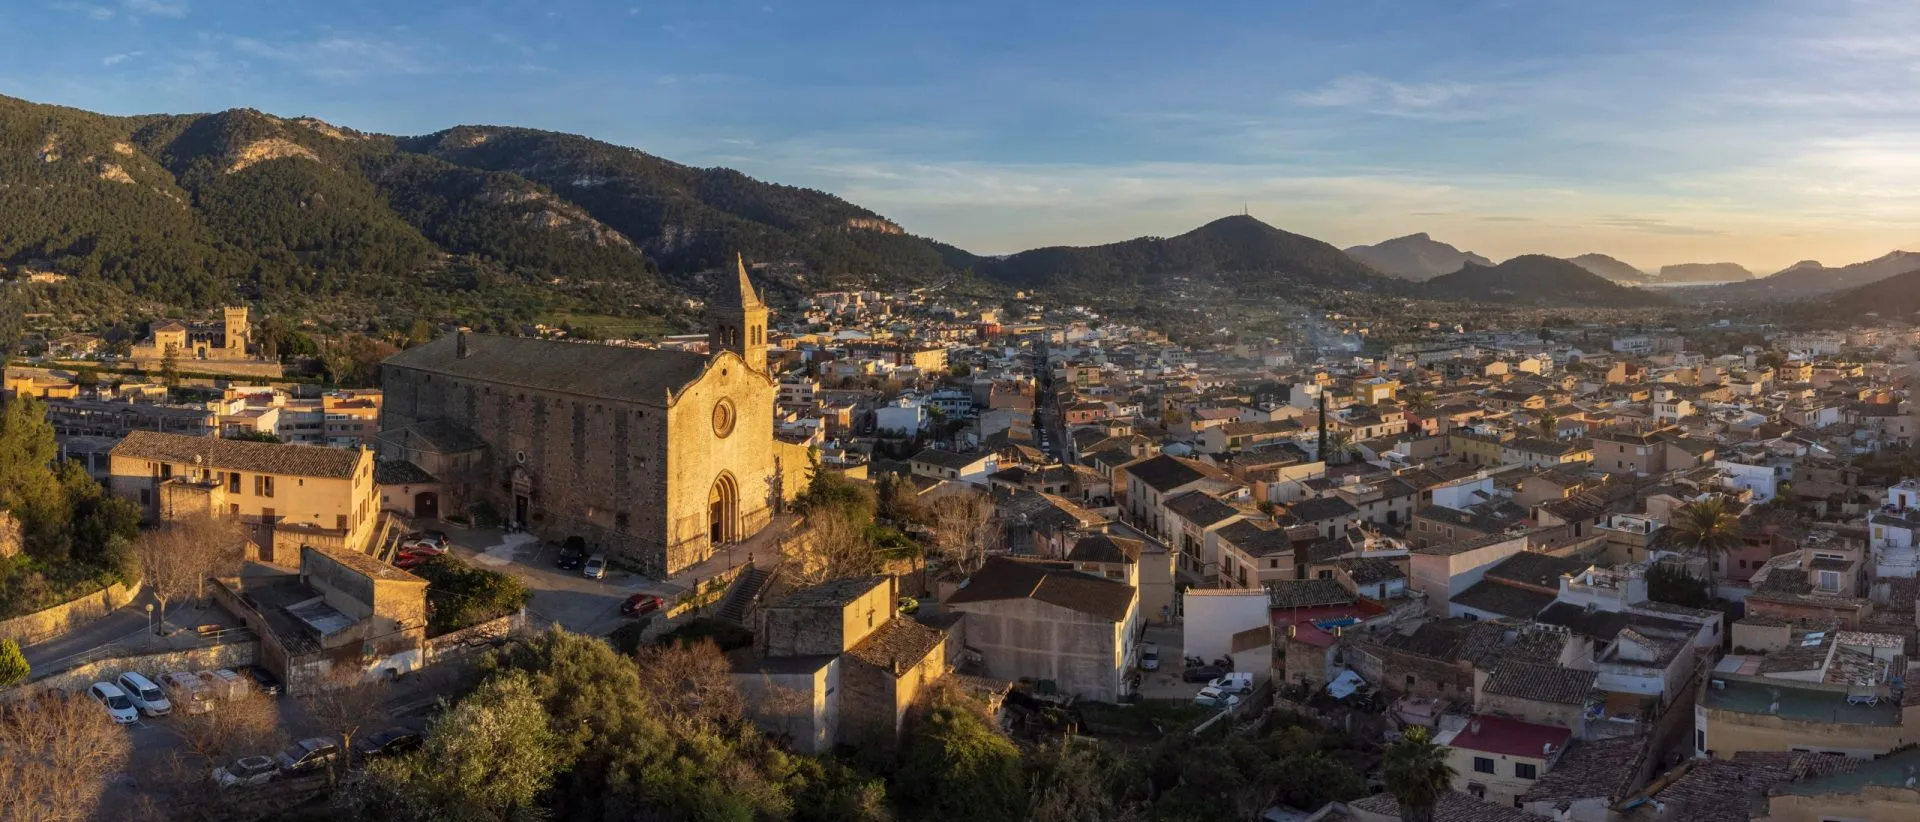 Chiesa di Santa Maria e città di Andratx, vista aerea al tramonto, Maiorca, Isole Baleari, Spagna